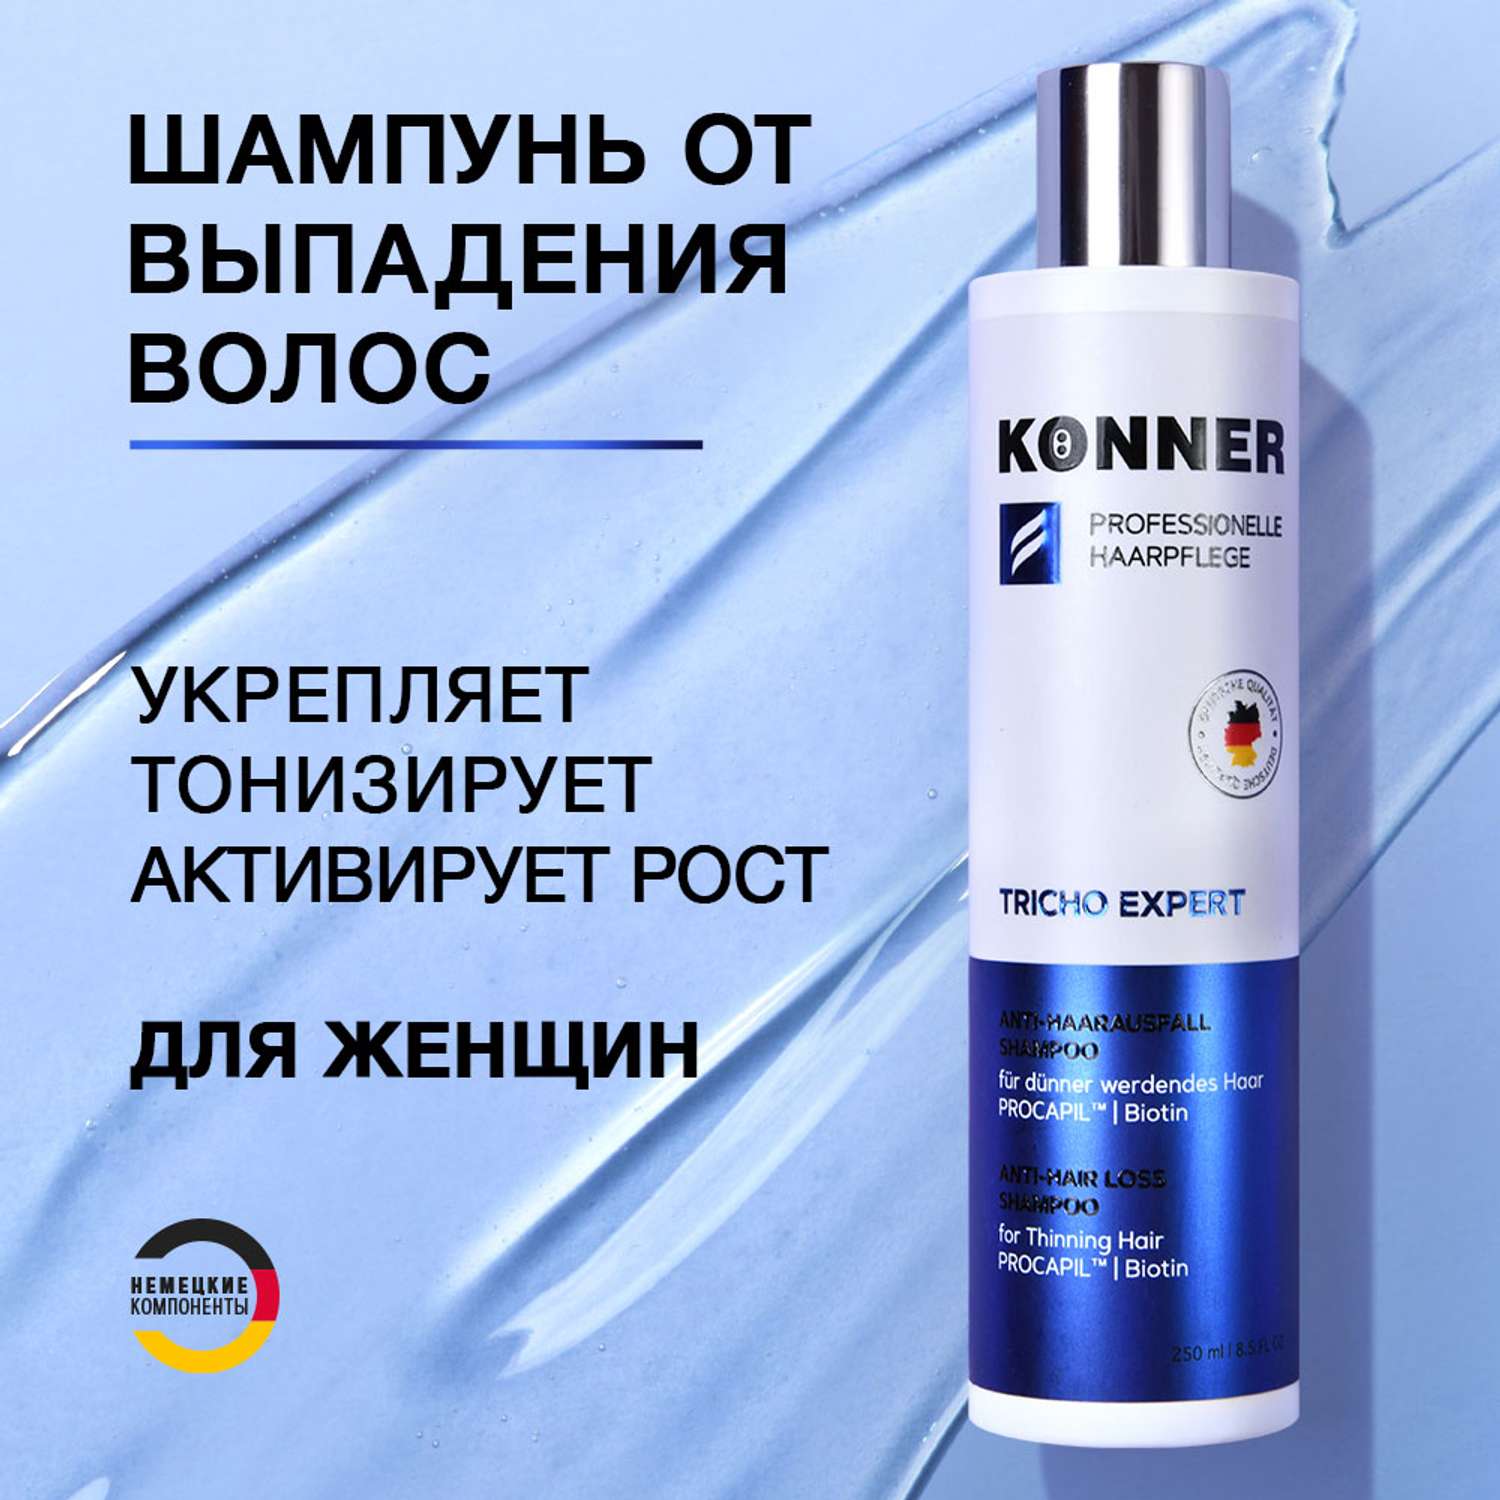 Шампунь для волос KONNER против выпадения с пантенолом и биотином 250 мл - фото 2